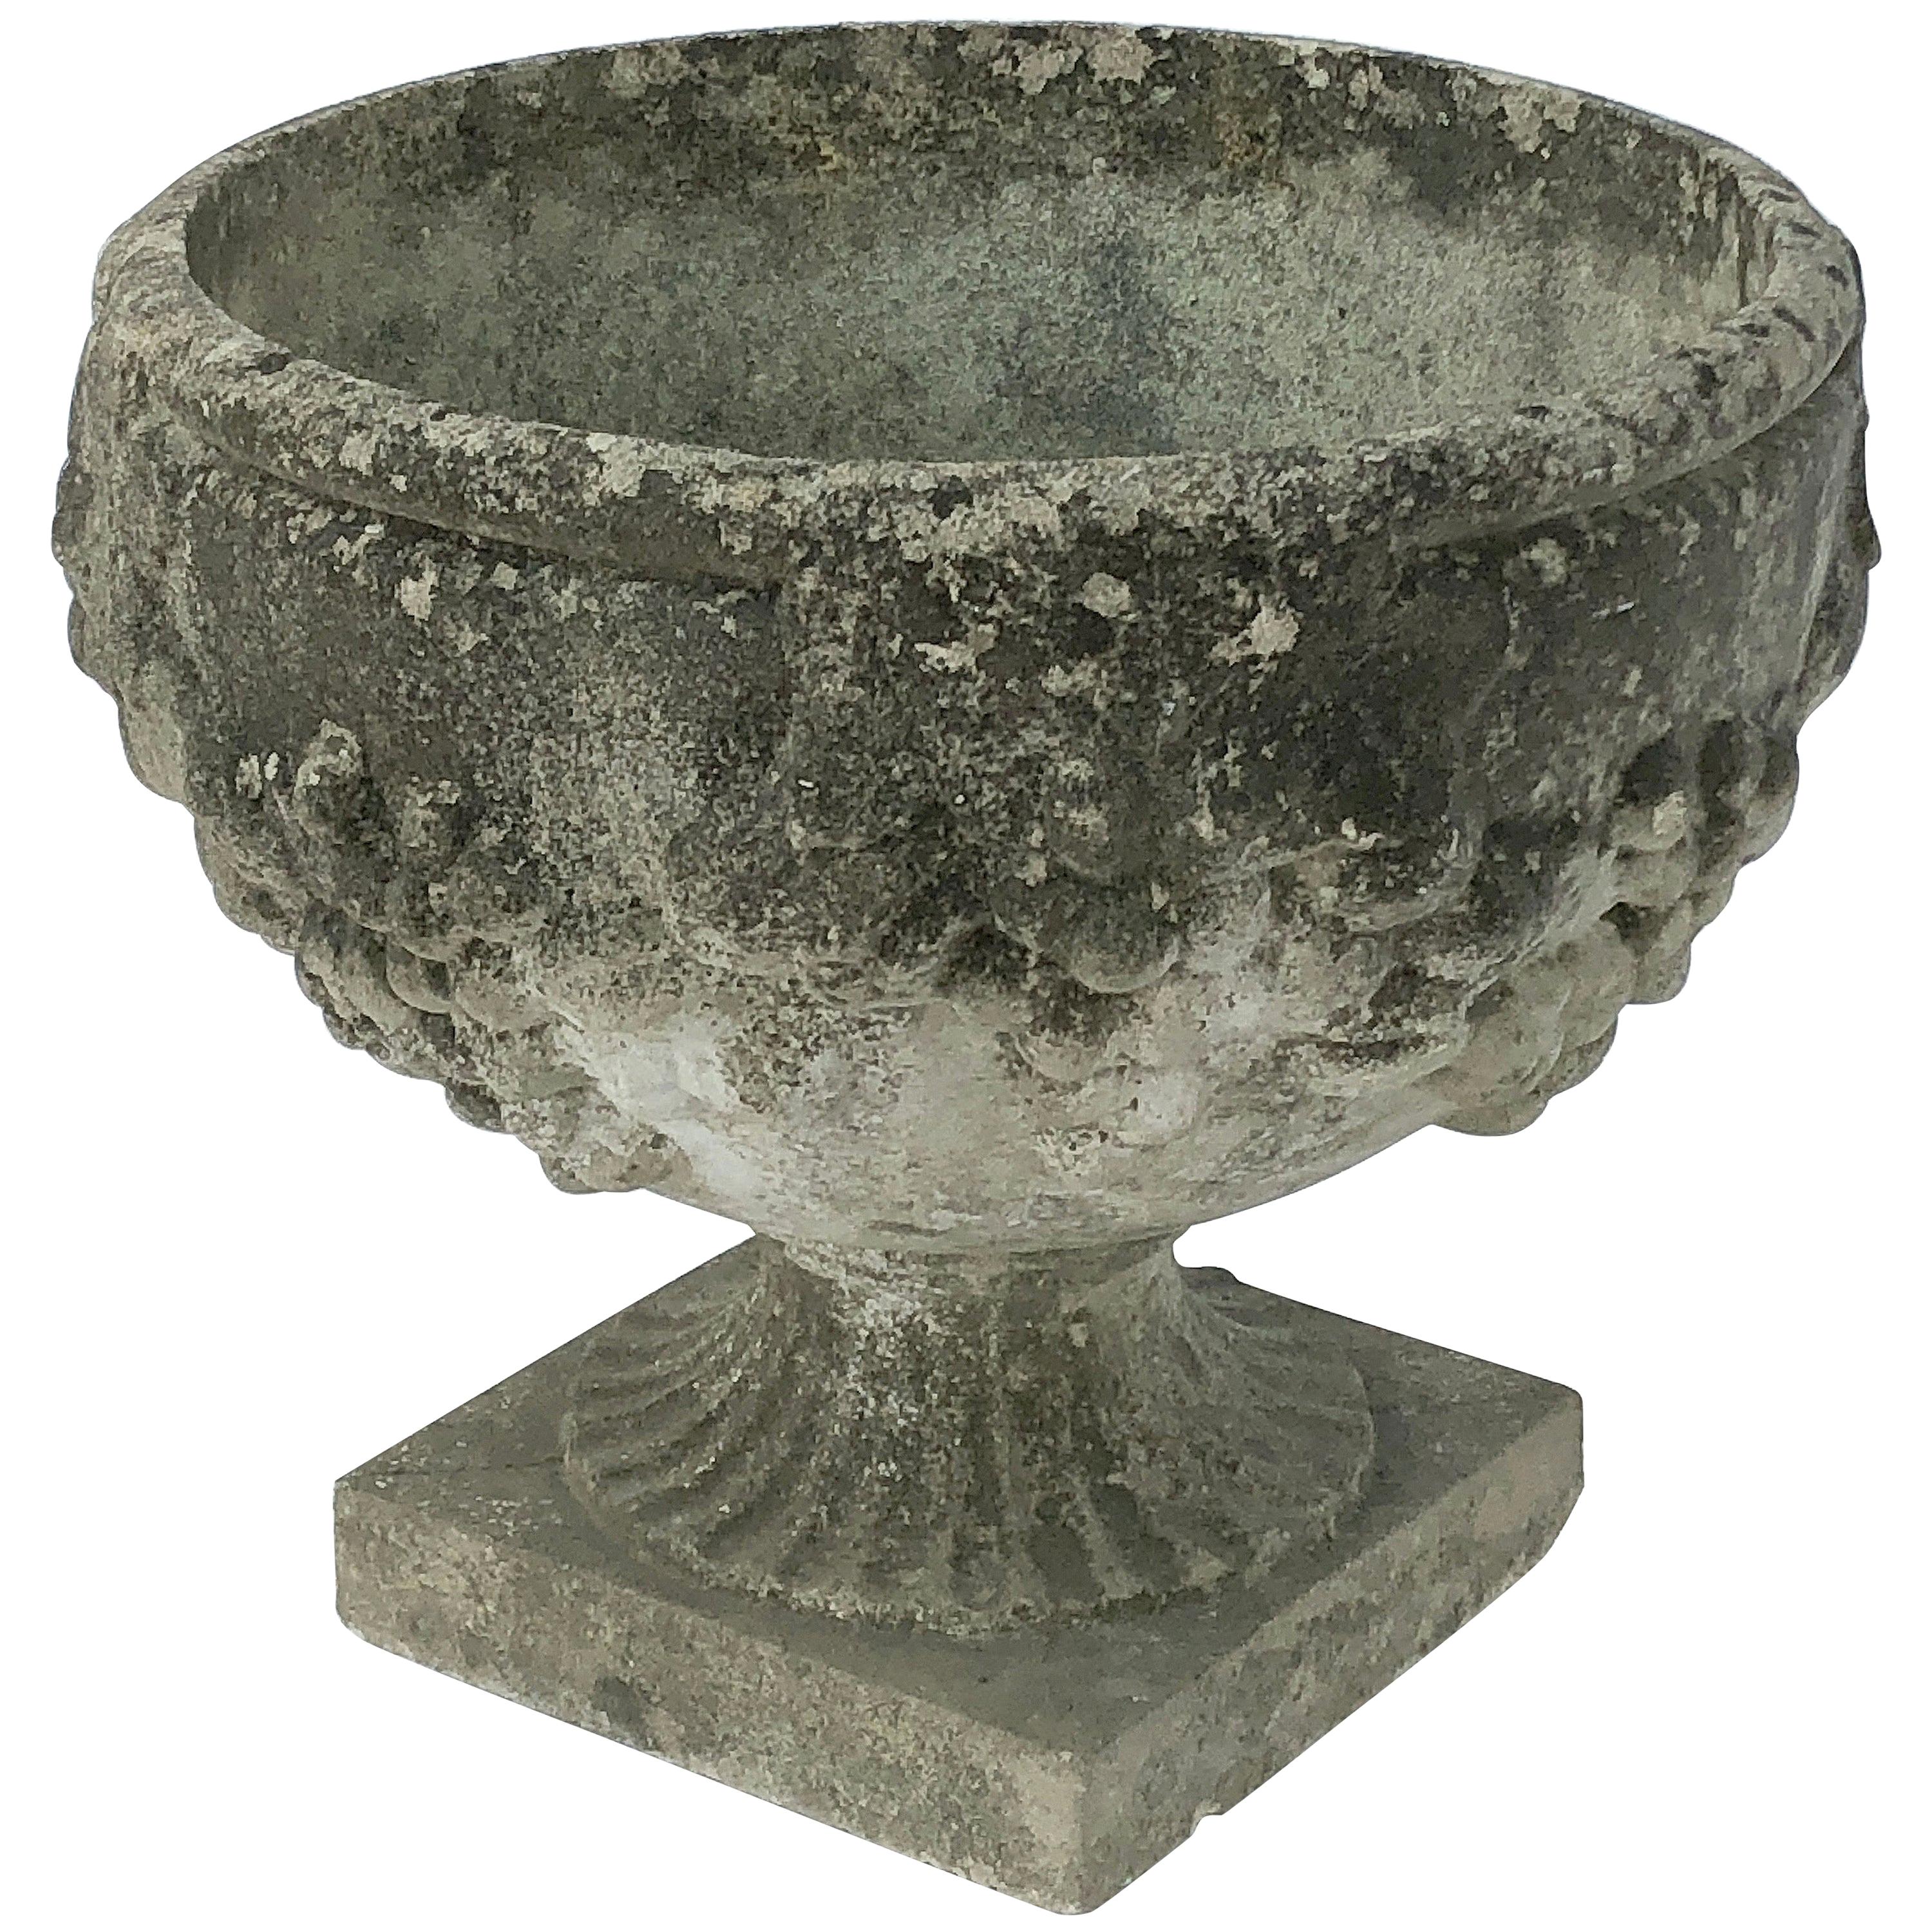 Pot ou urne en pierre de jardin anglaise avec relief de raisins